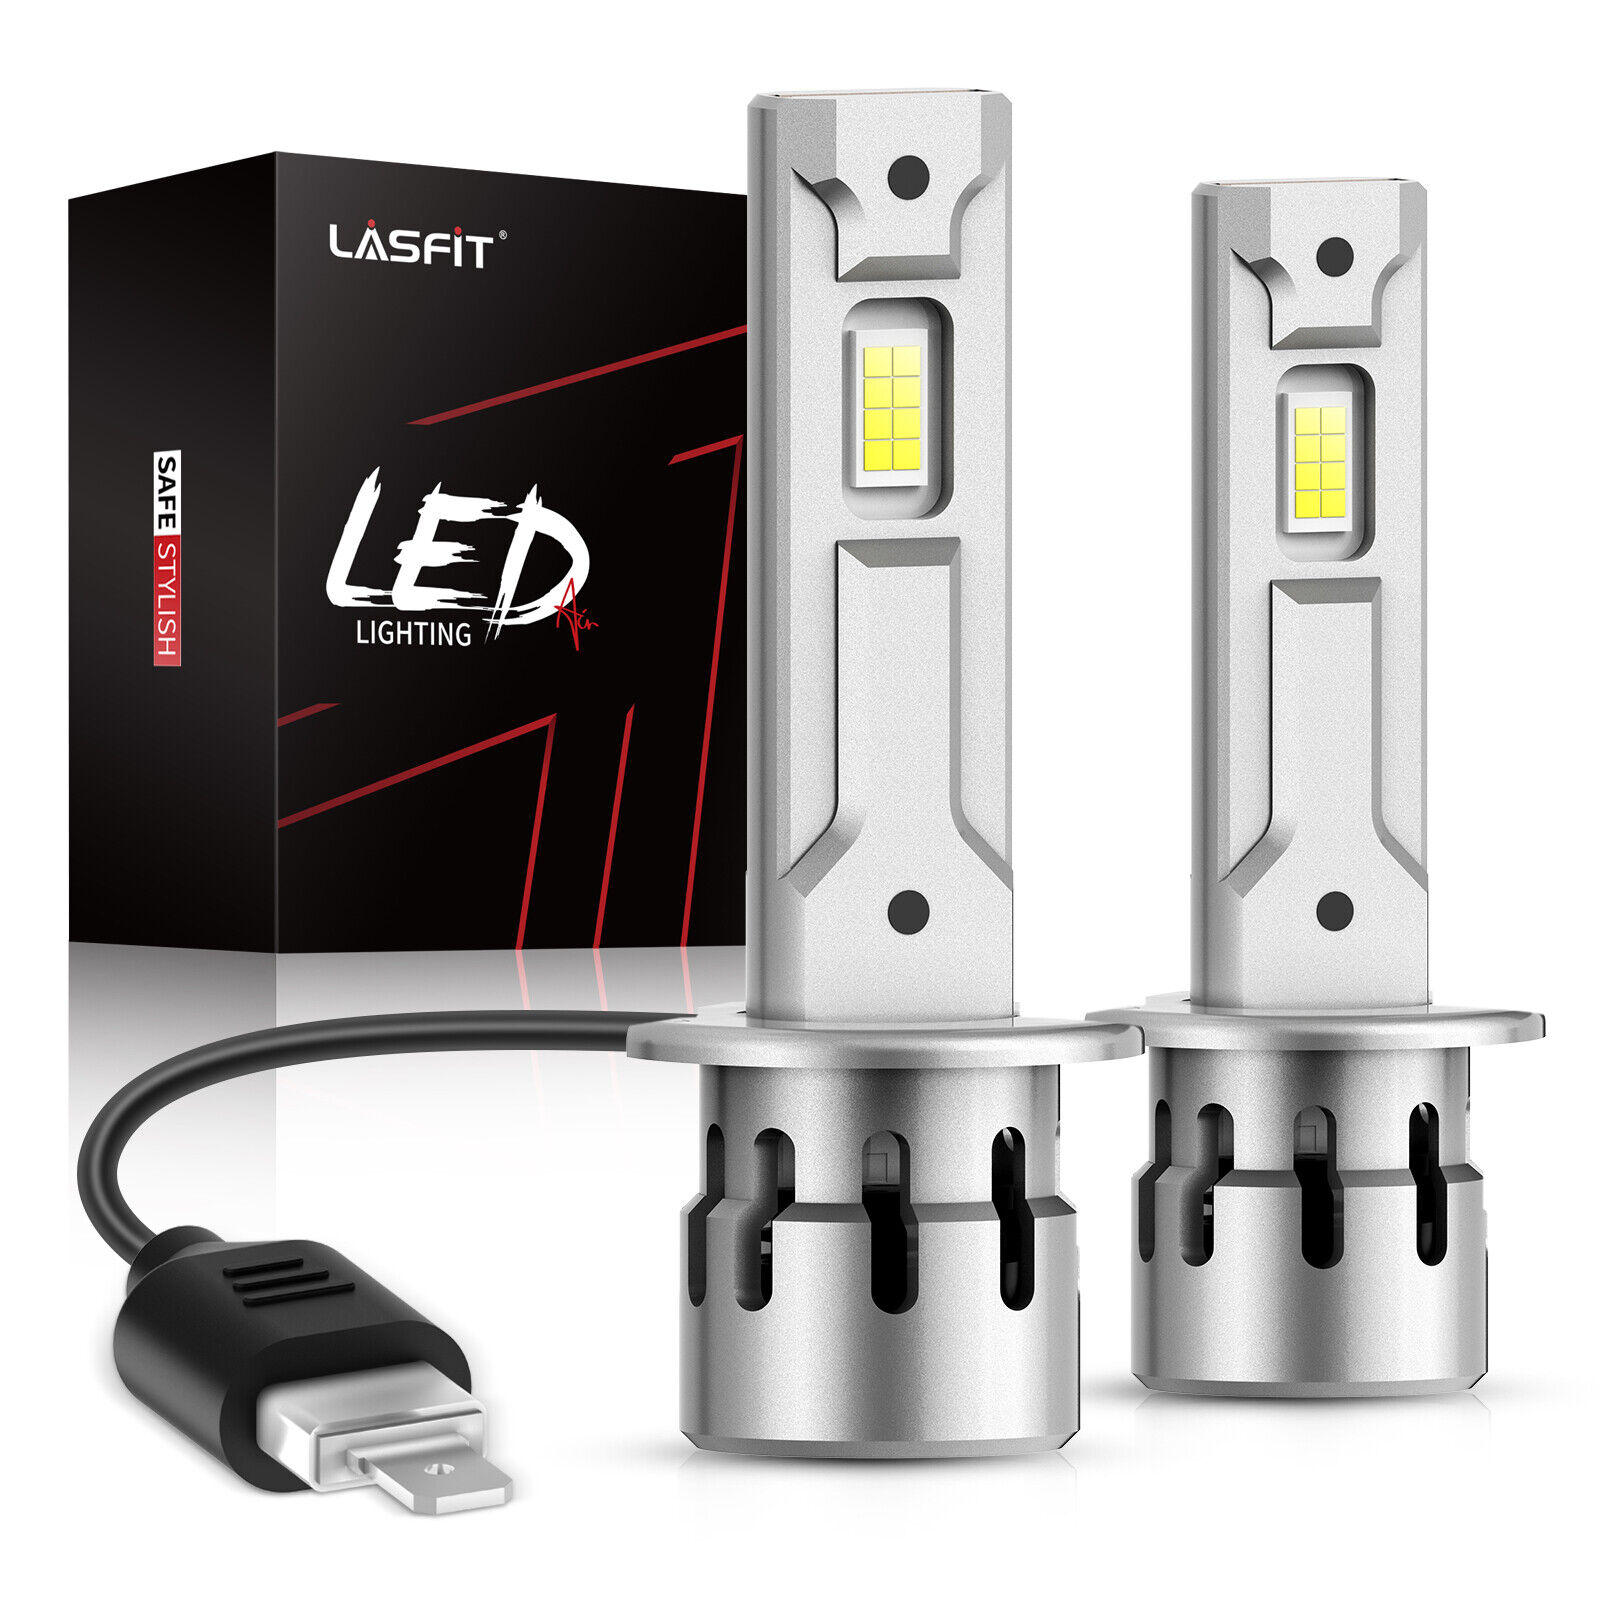 Lasfit H1 LED Headlights Bulb High Beam 60W 7000LM Super Bright LAair Series